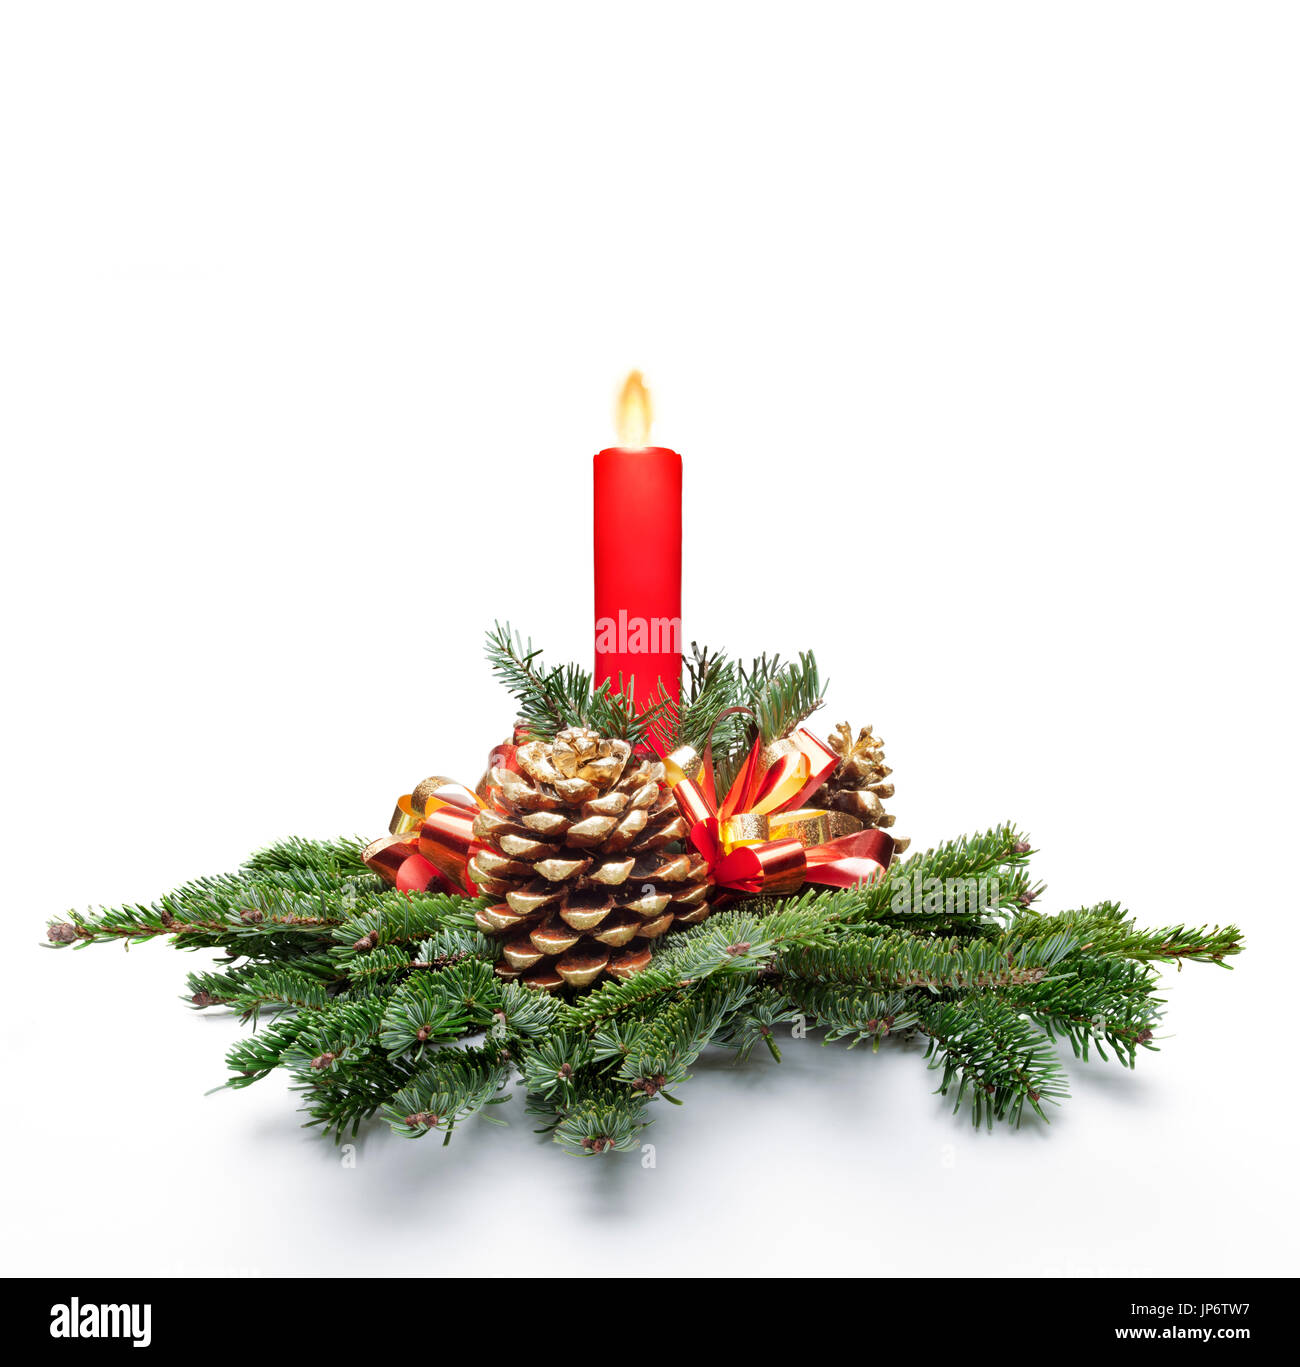 Weihnachten Tafelaufsatz mit einer roten Farbe Kerze angezündet und Tanne lässt. Weißen Hintergrund. Stockfoto